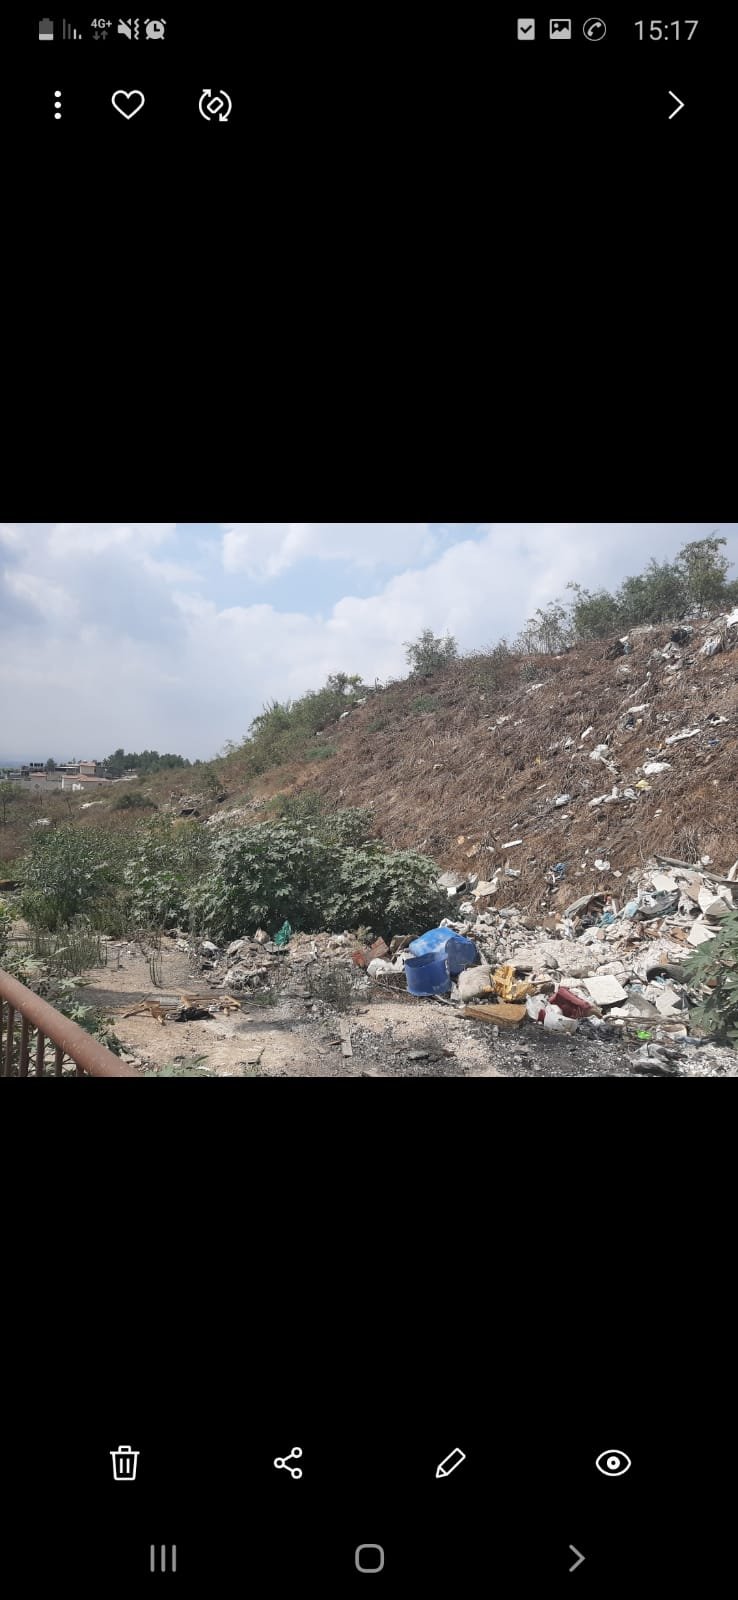 وحدة البيئة في بلدية الناصرة تحقق انجازات و مشاريع بيئية-28